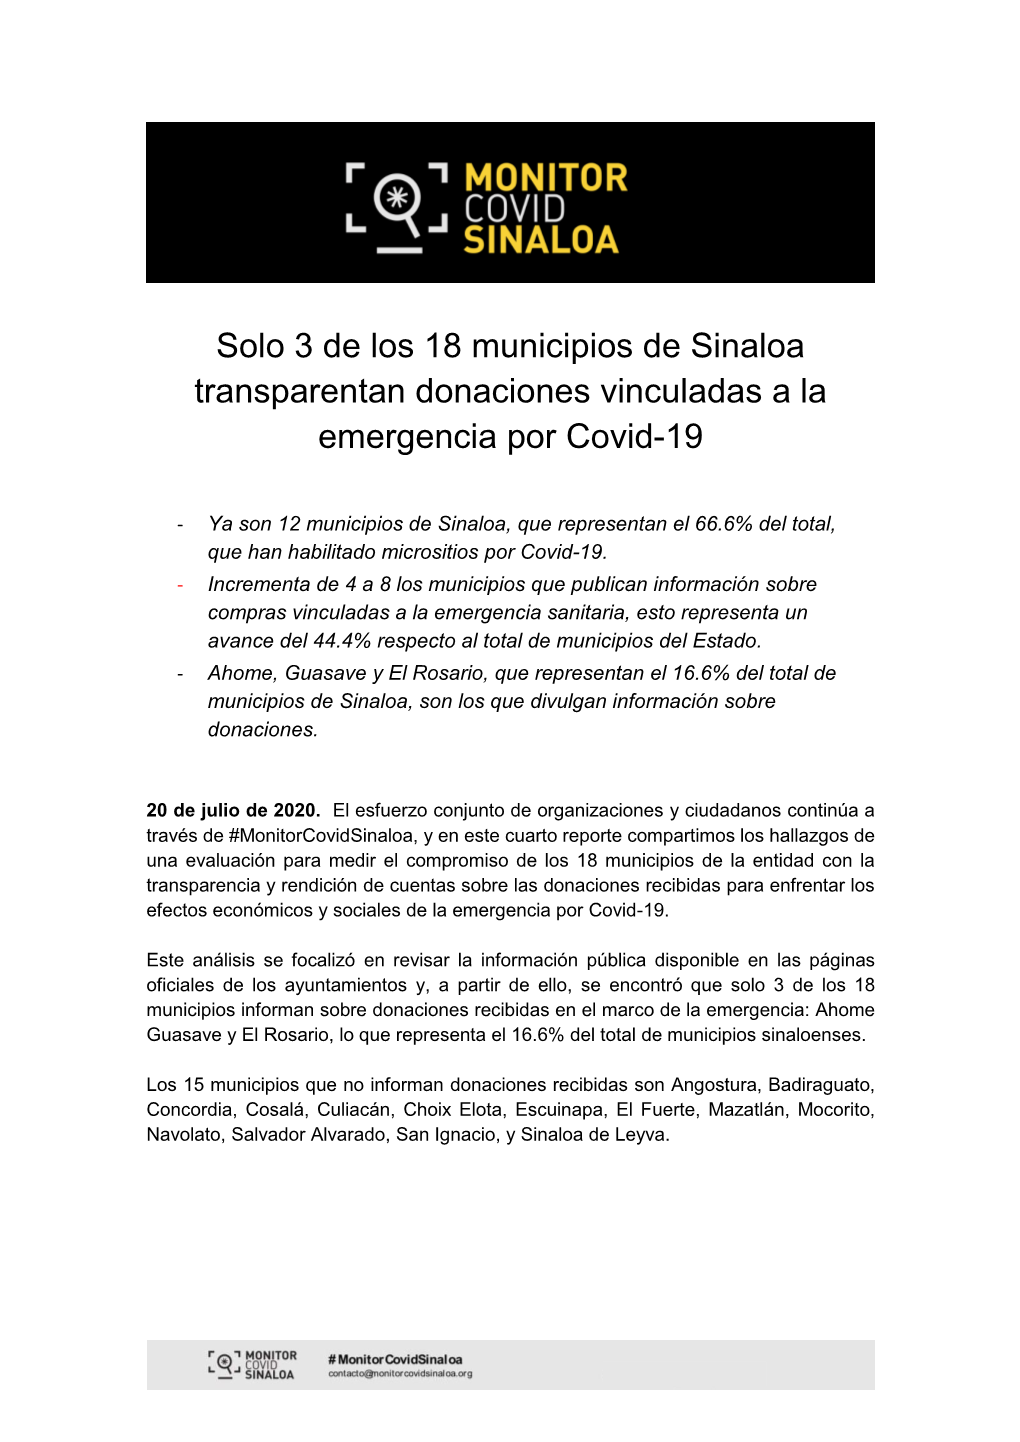 Solo 3 De Los 18 Municipios De Sinaloa Transparentan Donaciones Vinculadas a La Emergencia Por Covid-19